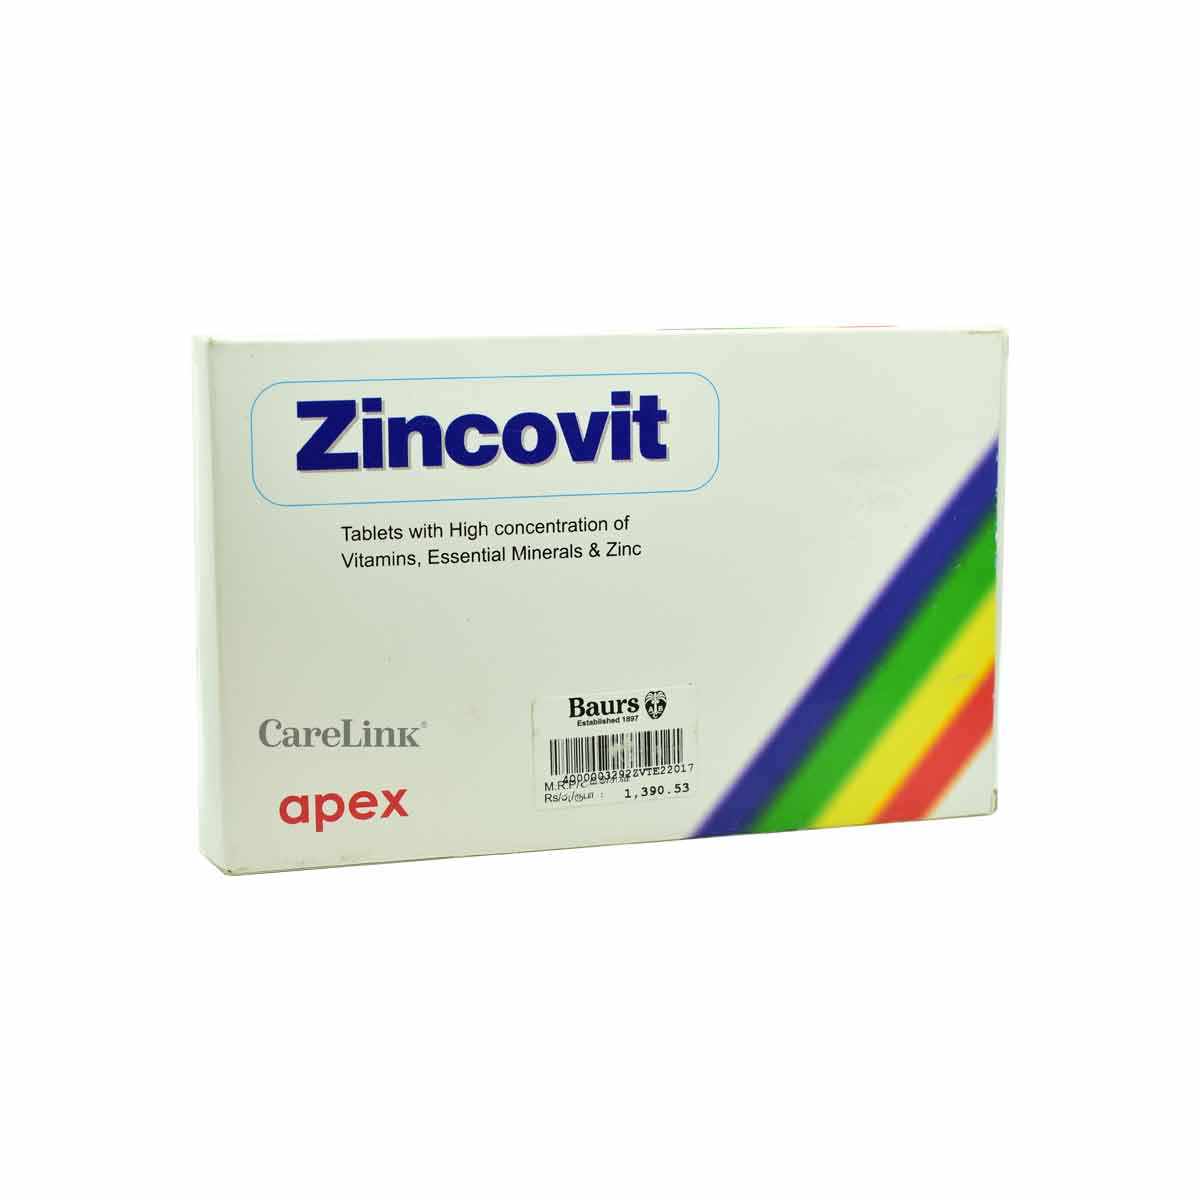 Zincovit Tab | Online Pharmacy in Sri Lanka | Carelink.lk